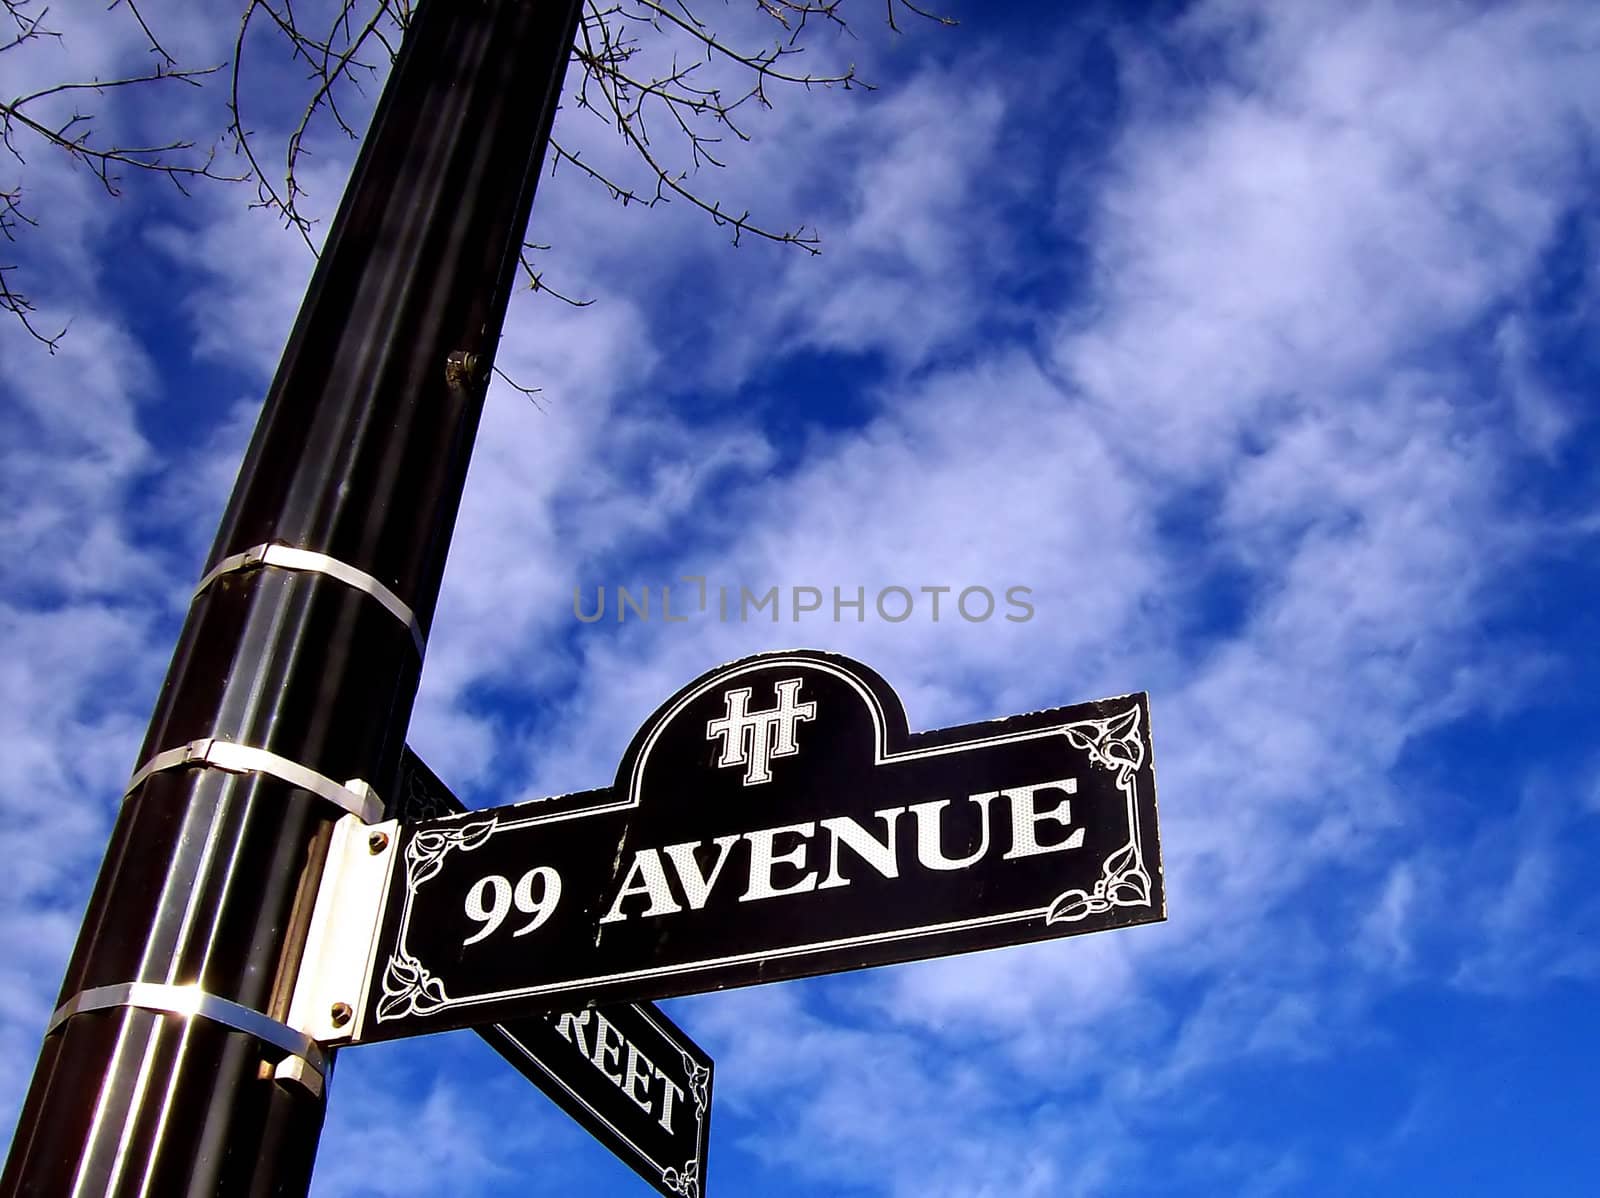 99 Avenue by watamyr